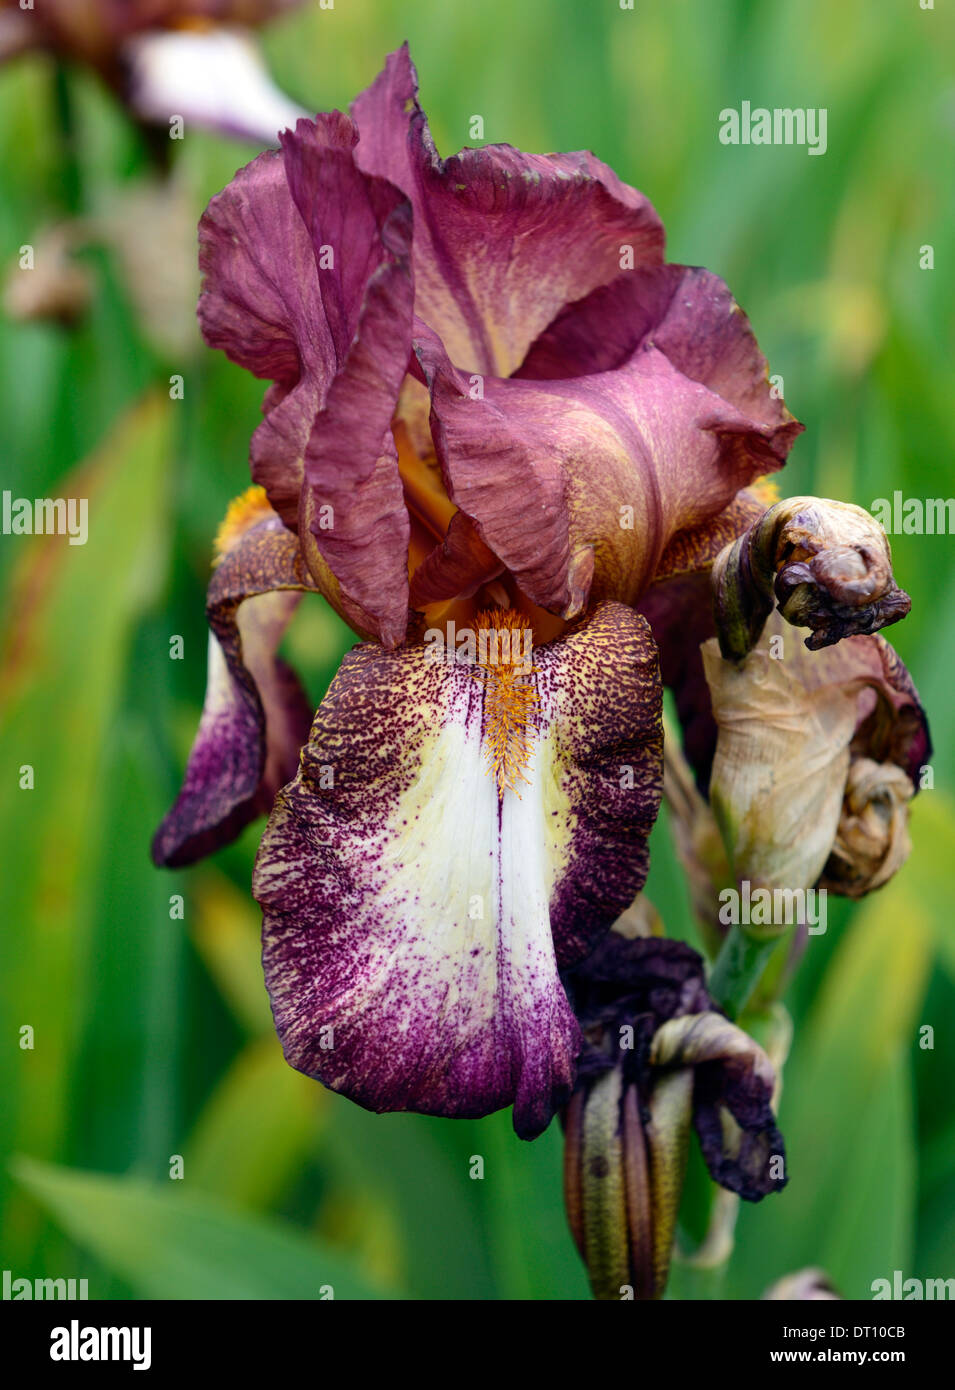 Iris La mia smokey barbuto Iris germanica tedesco Rhizomatous Iris viola chiaro malva punta a punta di colore colore fiore sbocciare dei fiori Foto Stock